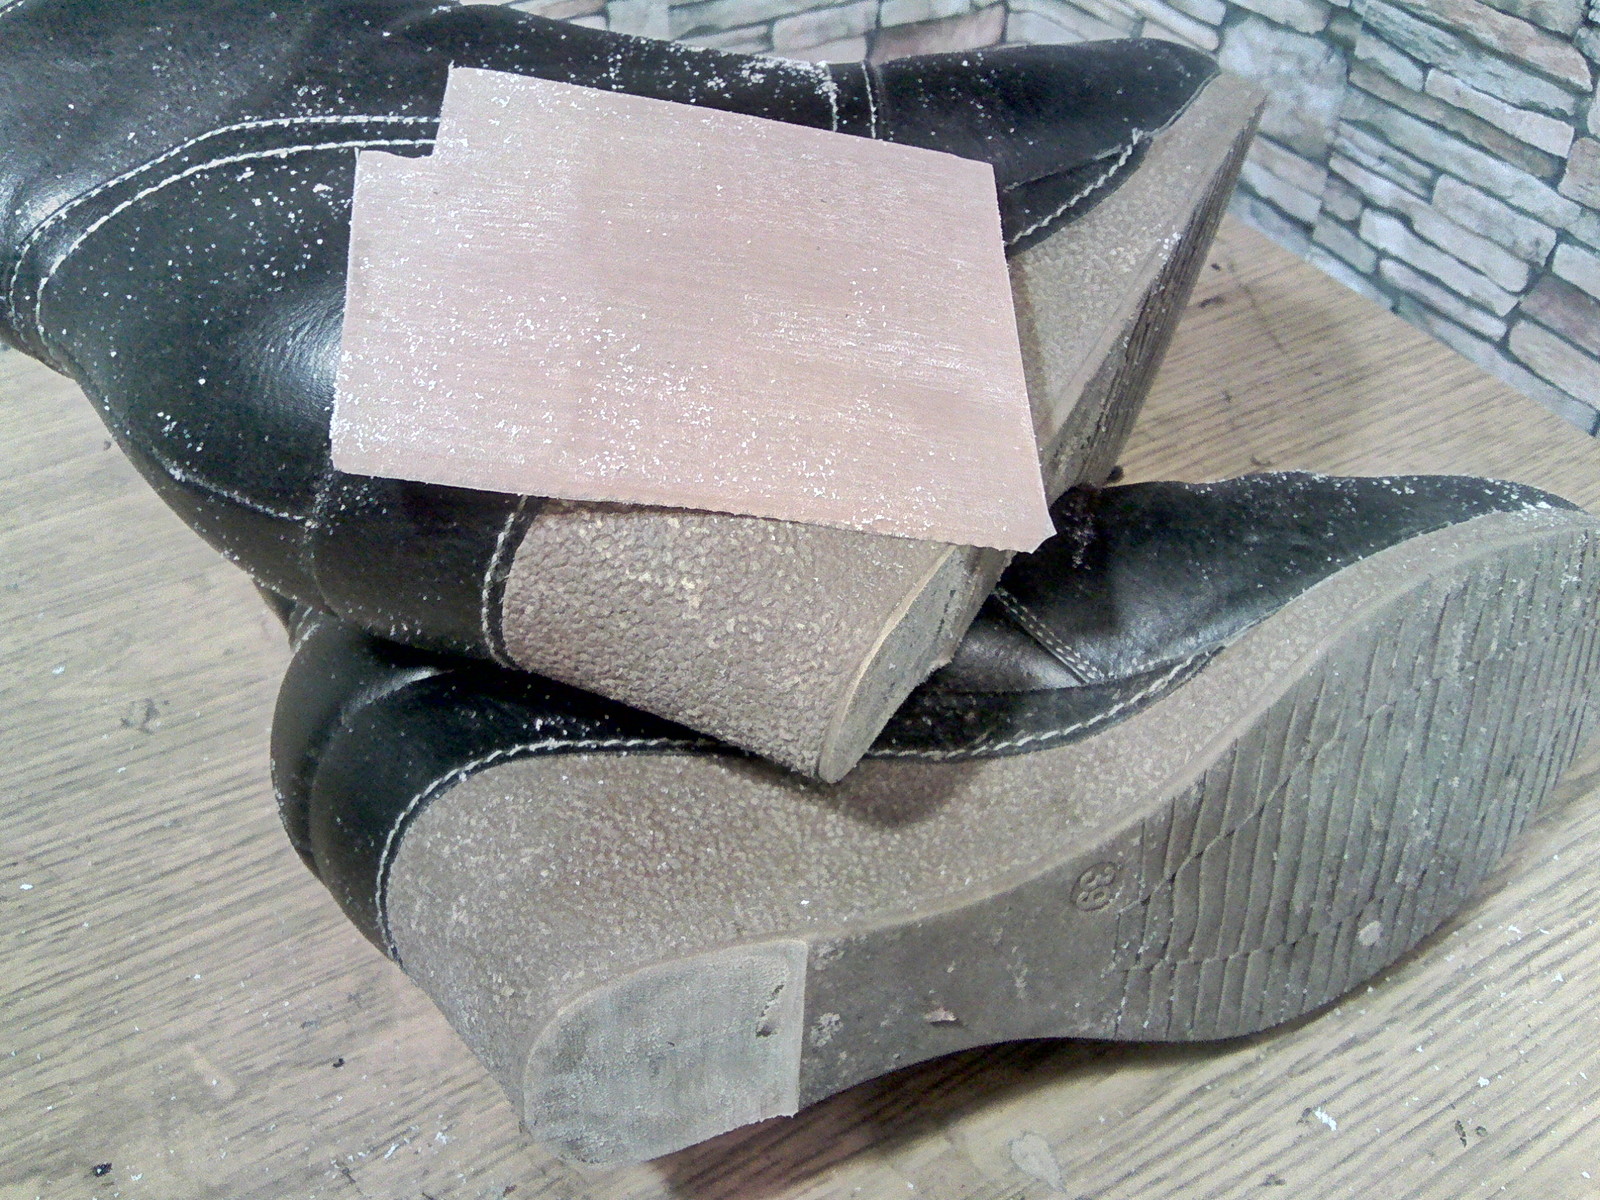 Insidious wedge style. - My, Shoe repair, Heels, Wedge heel, Work, Longpost